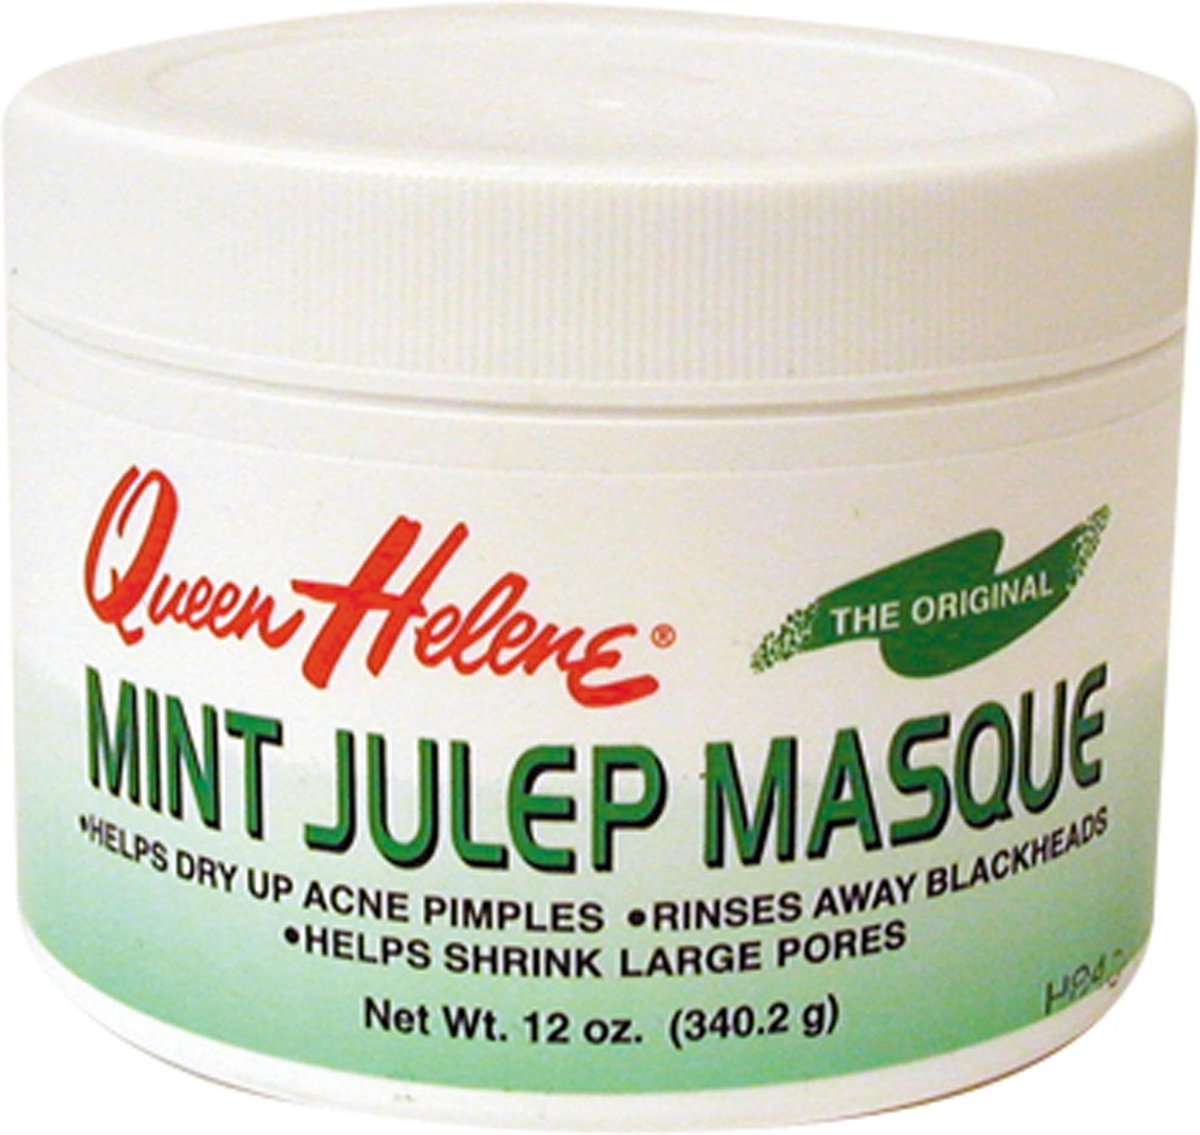 Queen Helene Mint Julep Masque 170 gr